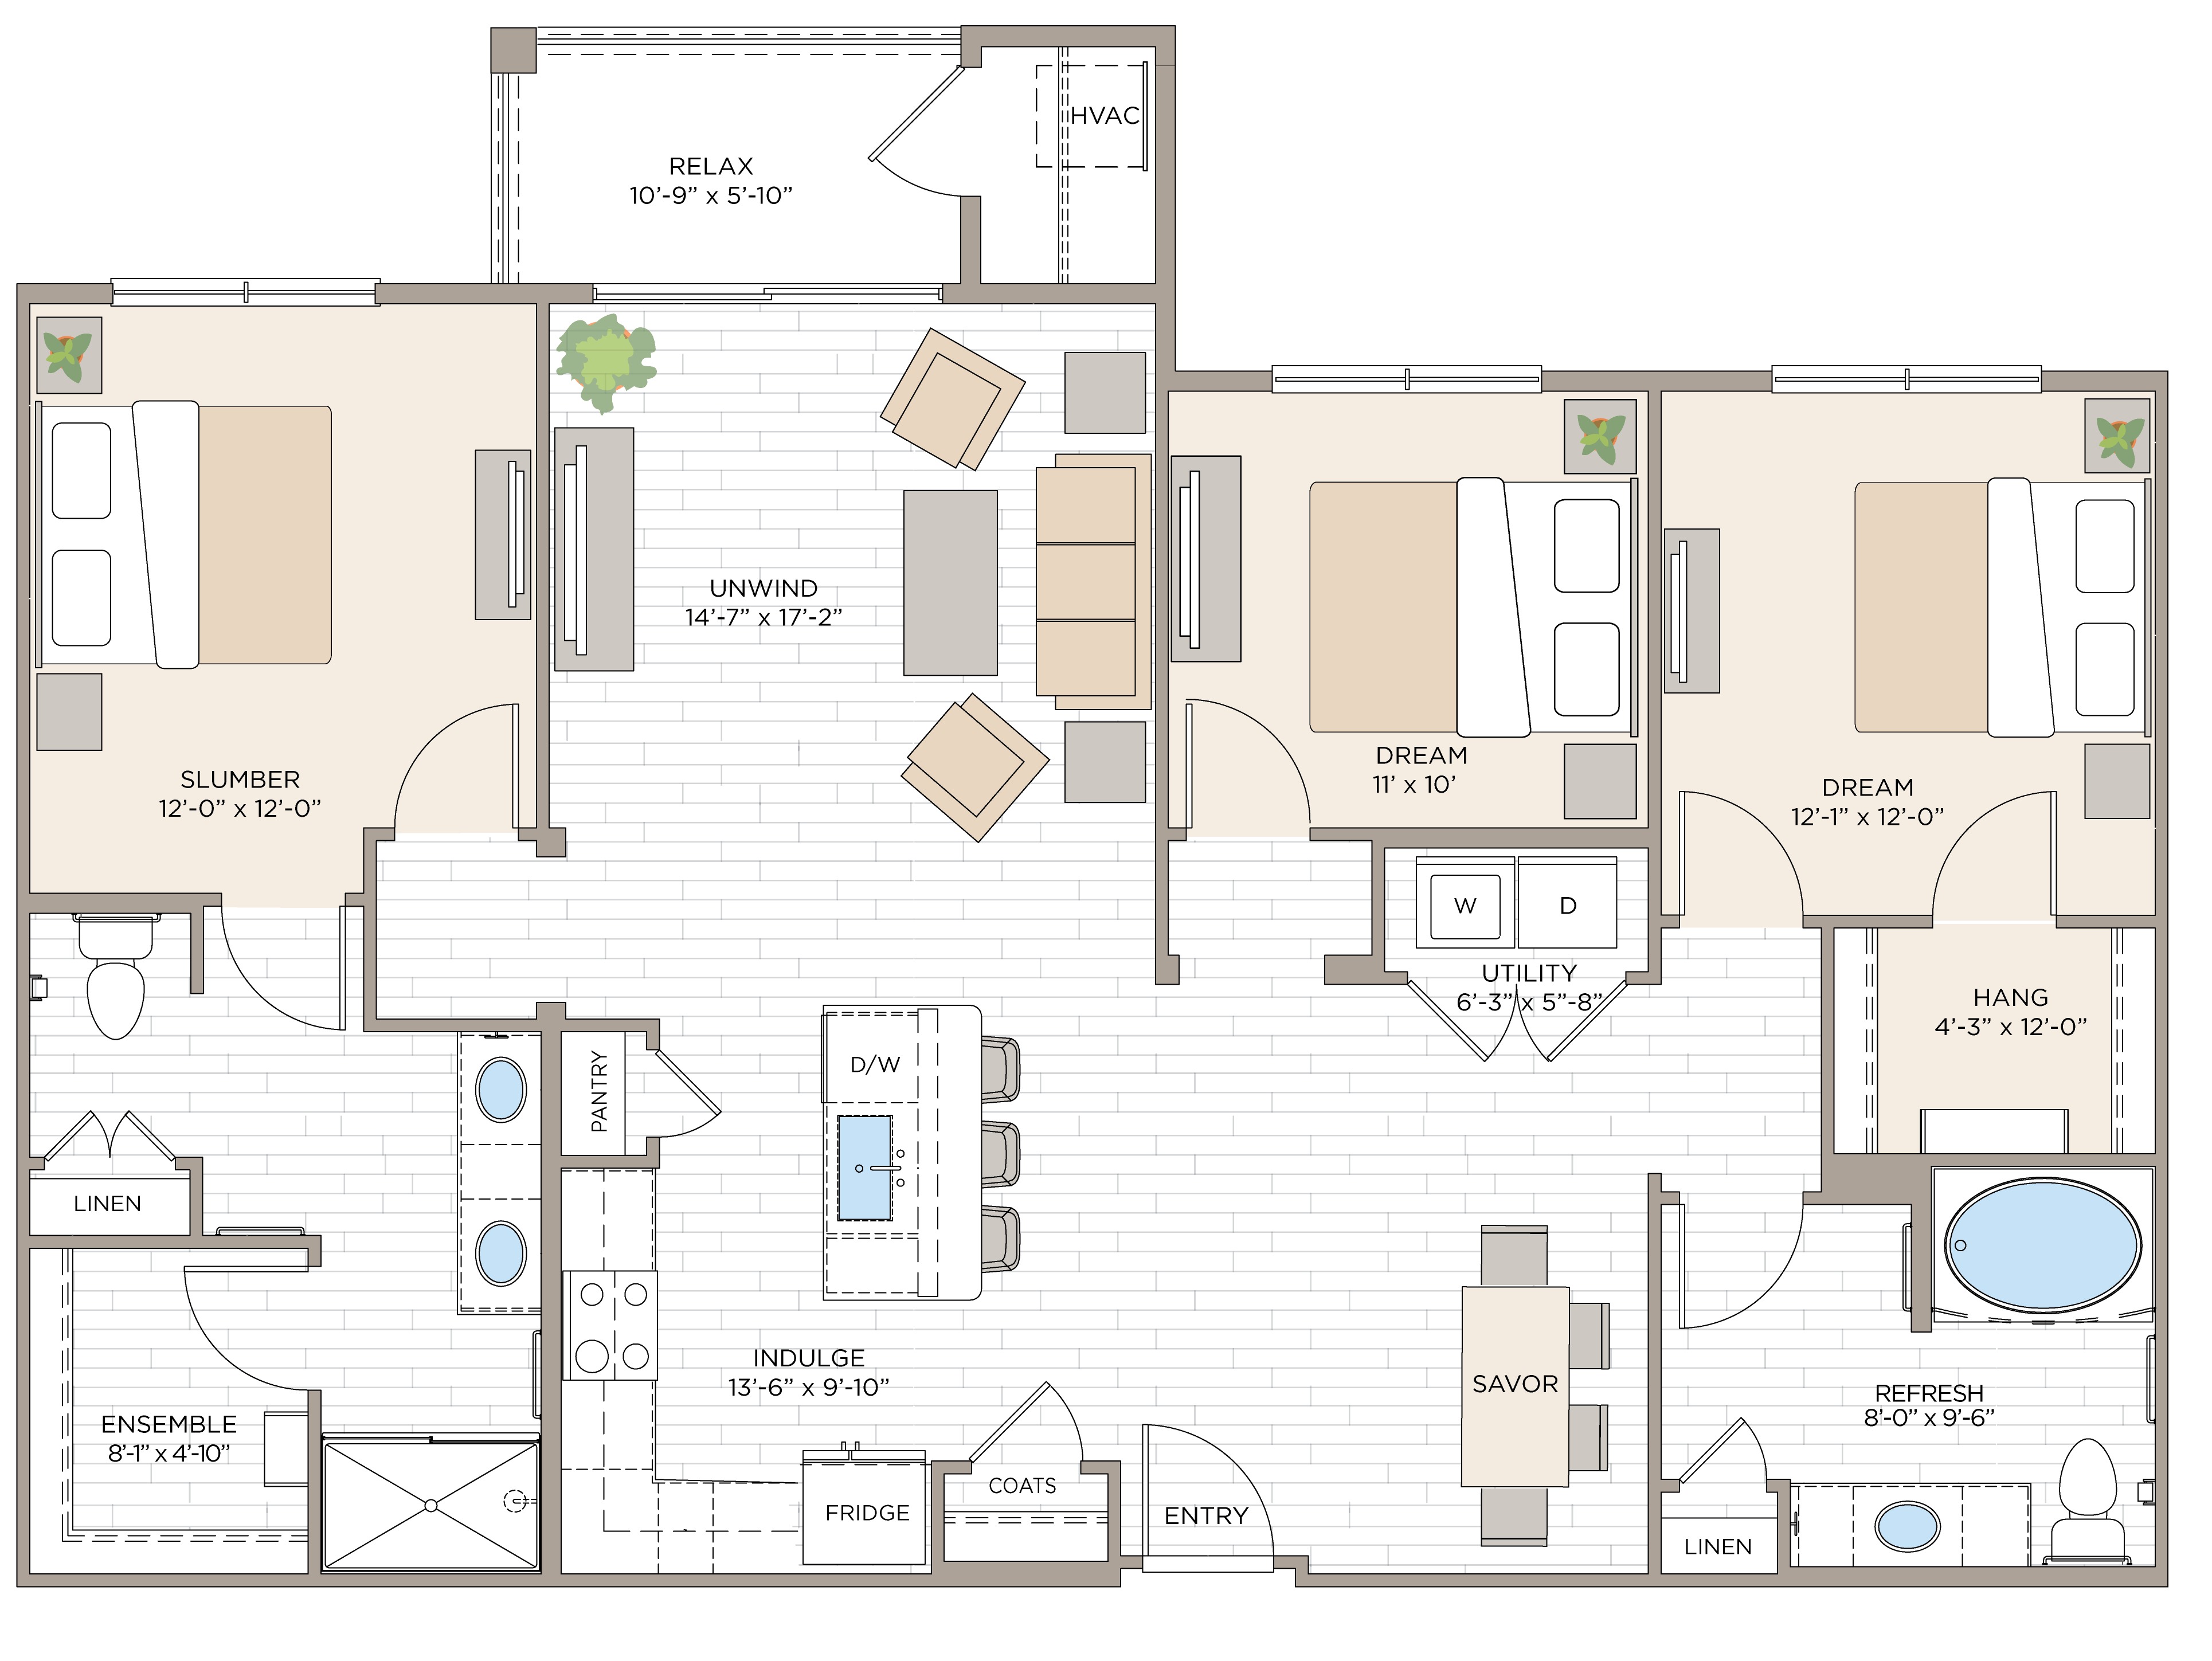 Floorplan for Unit #C2A, 3  bedroom unit at Halstead Maynard Crossing